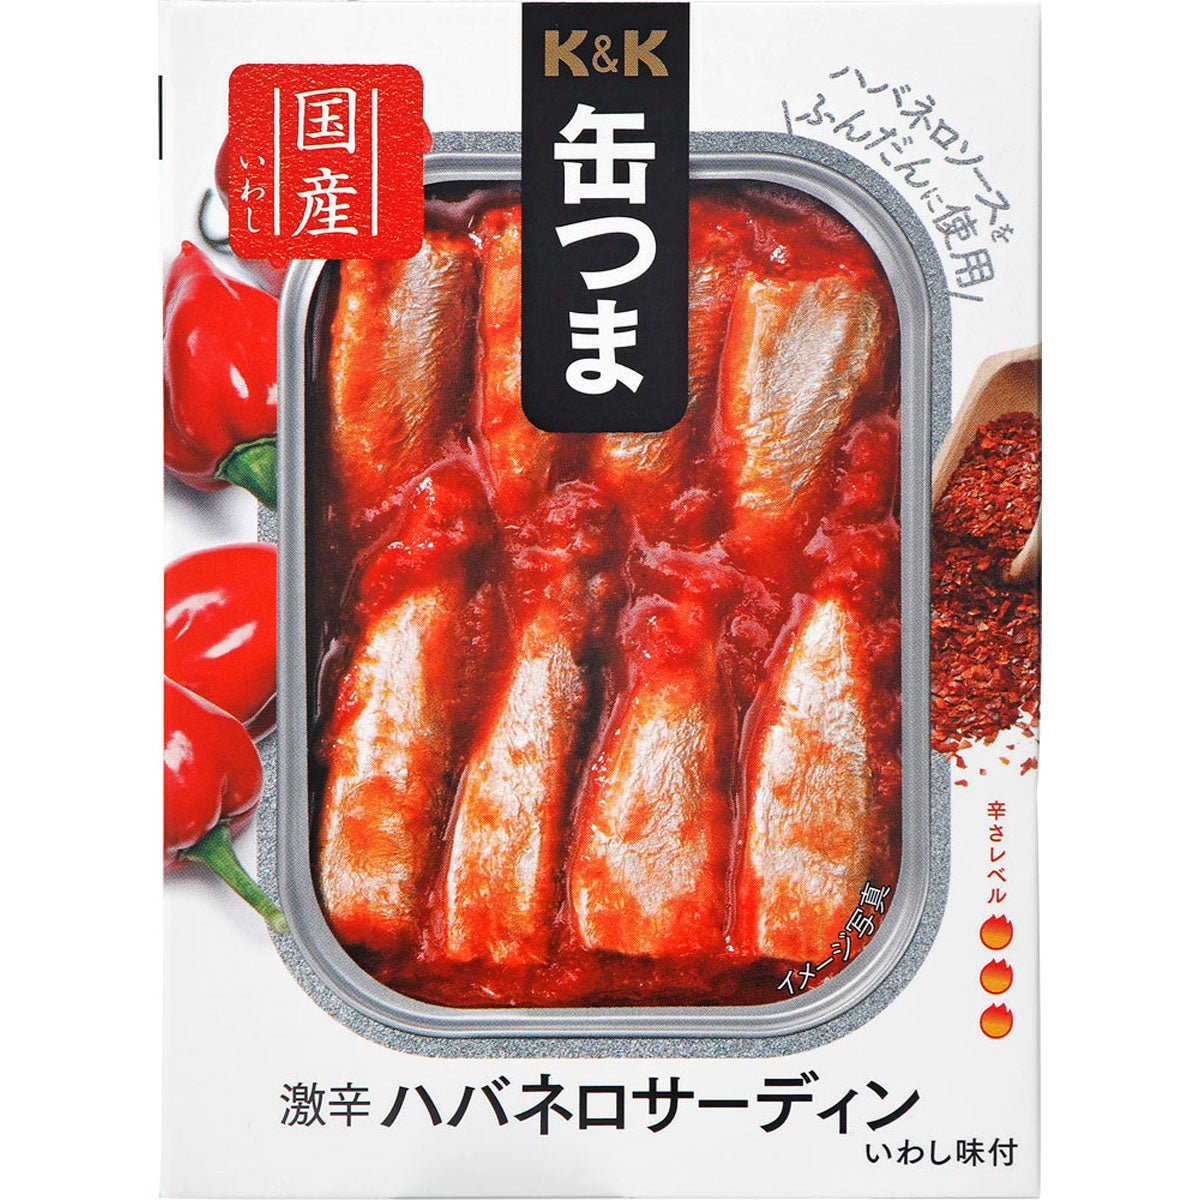 K & K can Tsuma A hot spicy habanero sardine